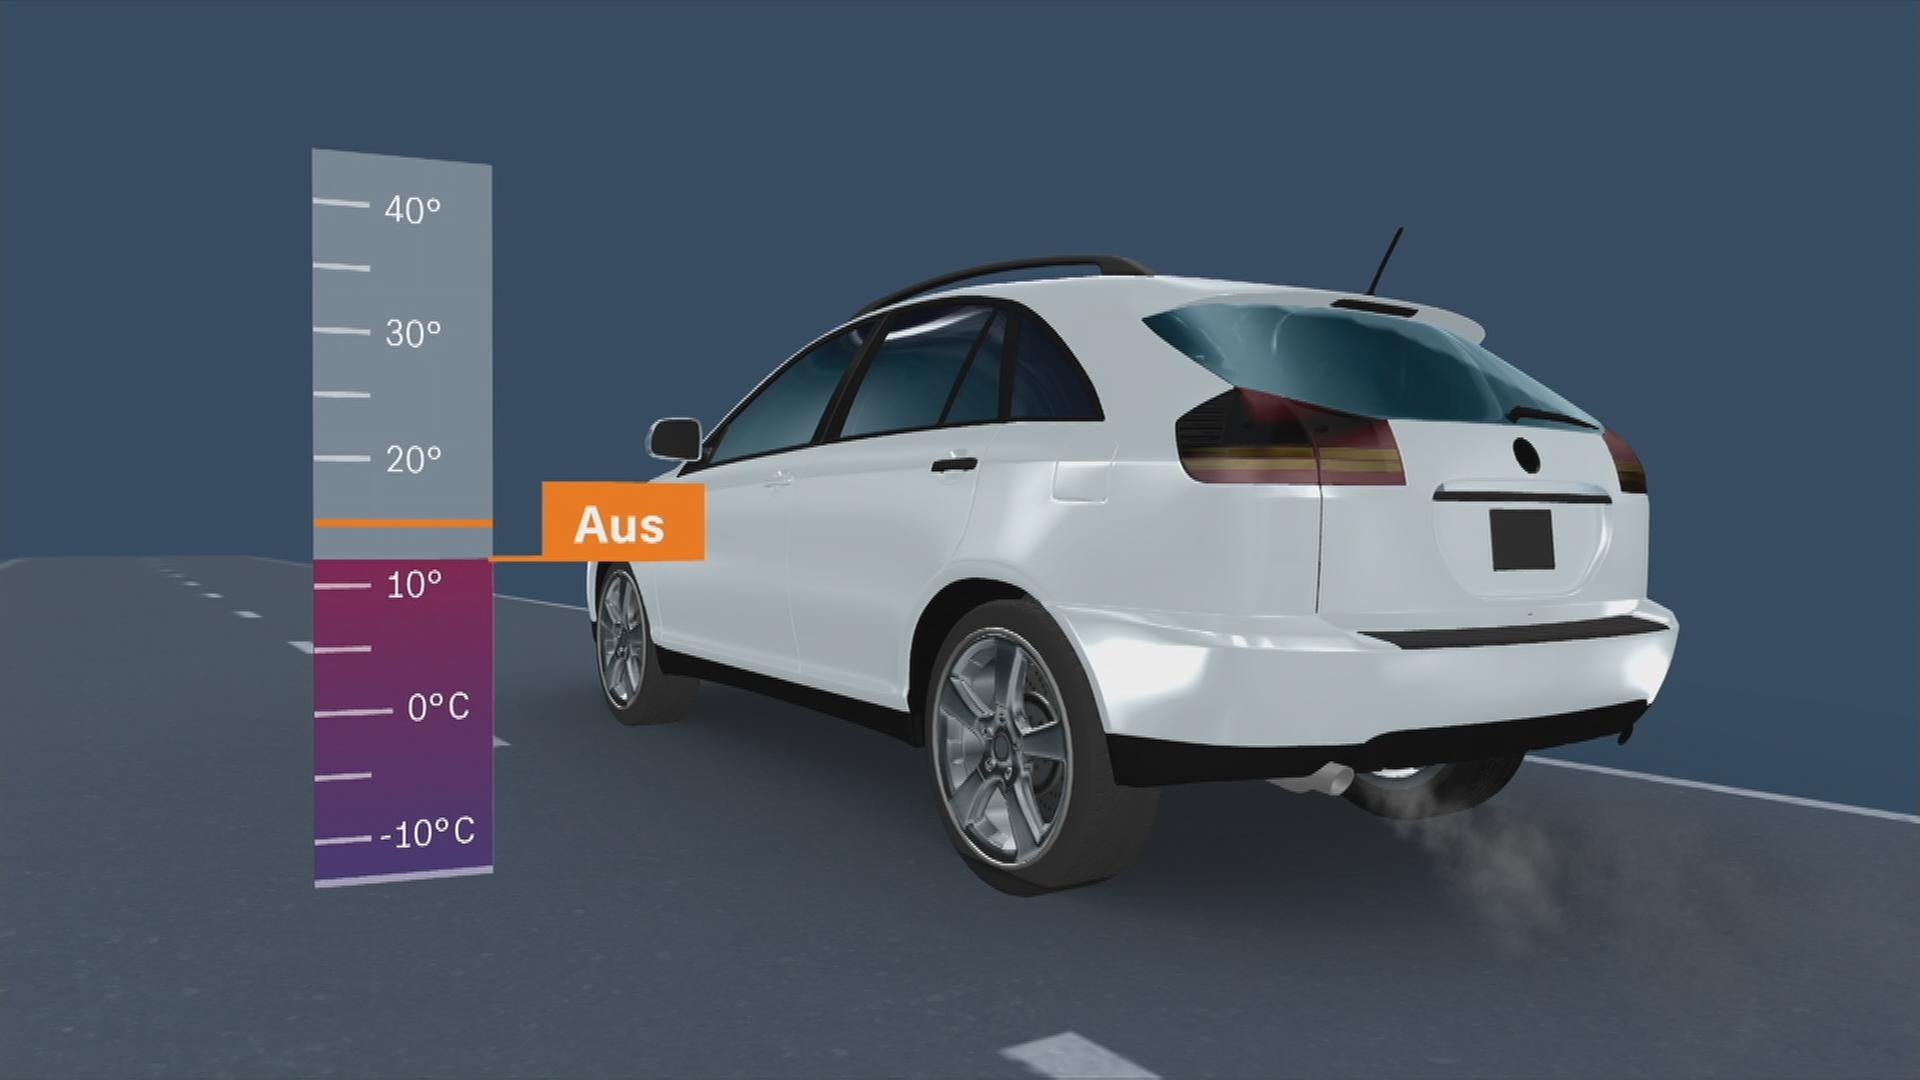 Auf dem Bild ist eine Grafik zu sehen, welche anzeigt bei welcher Temperatur die Abschalteinrichtung bei Dieselautos nicht wirkt.